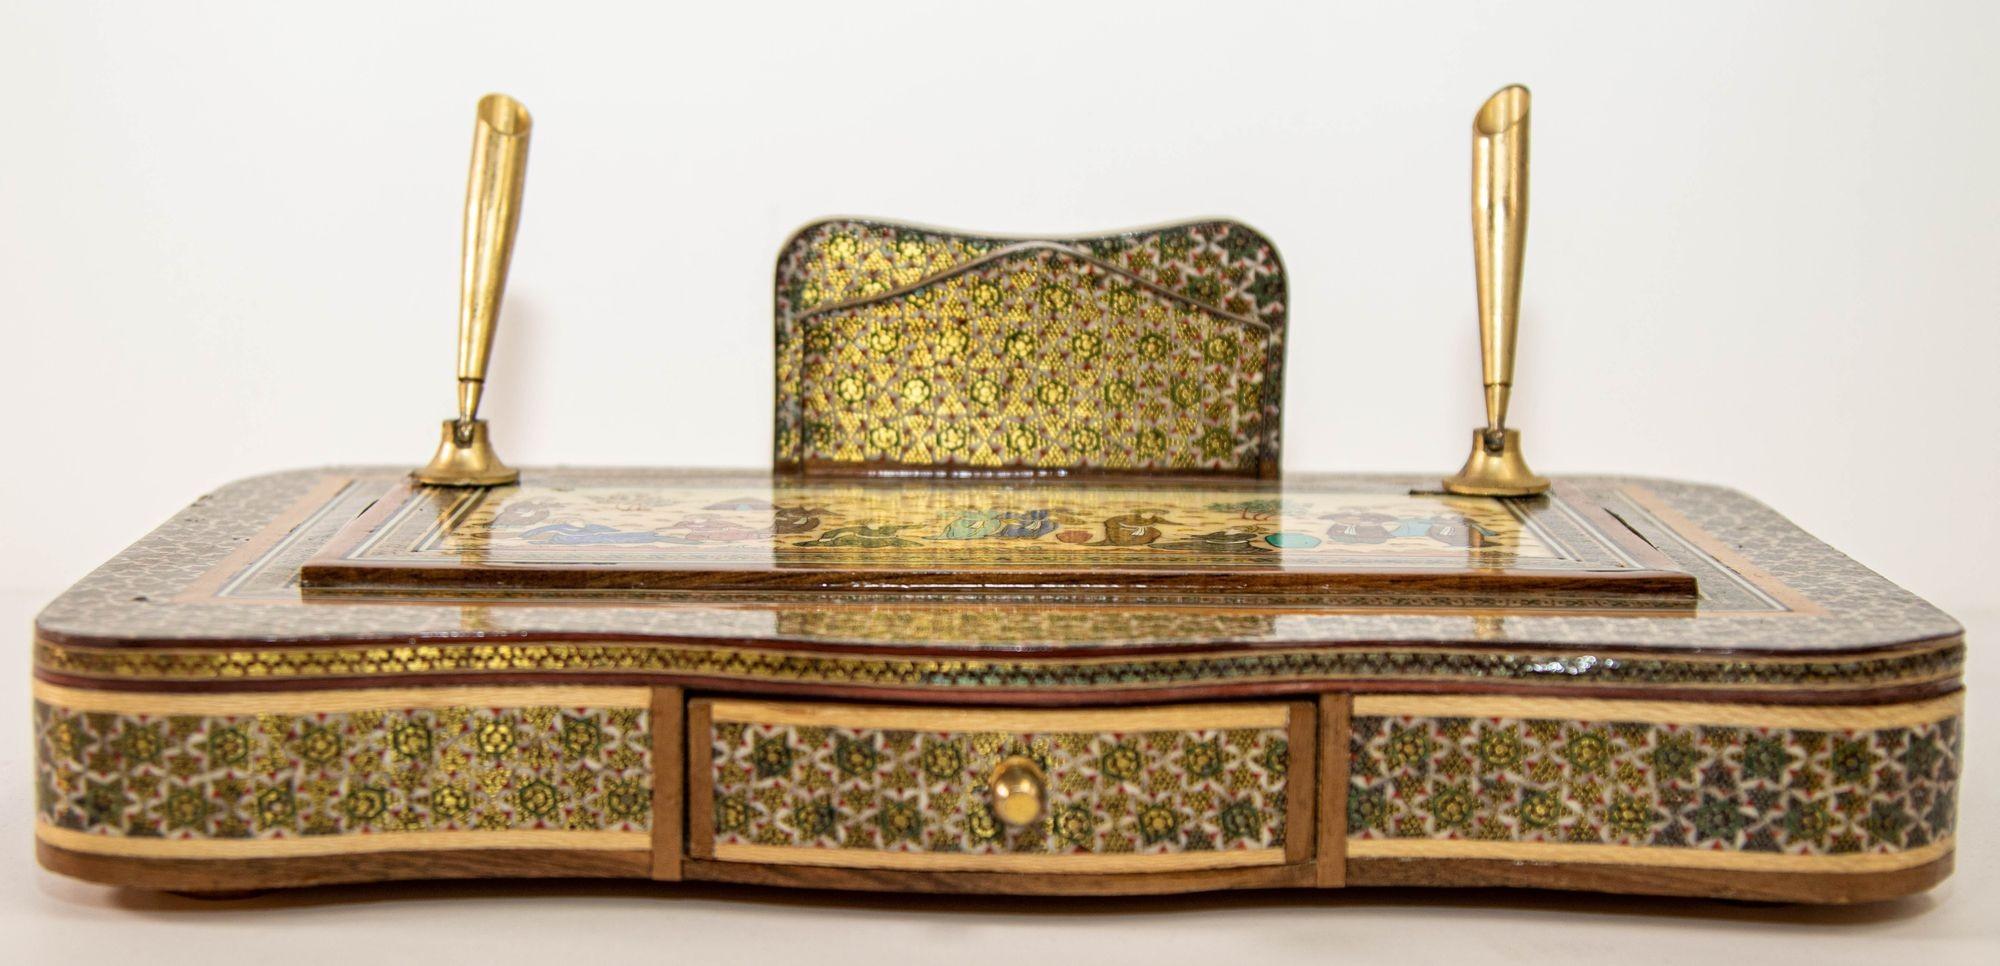 Vintage 1950s Persian Khatam Schreibtisch-Set in Massivholz Mosaik-Inlay mit Messingspitzen Stifthalter.
Der hölzerne Sockel ist mit Khatam bedeckt, und auf der oberen flachen Seite ist eine Miniaturmalerei zu sehen, die junge Menschen, Mädchen und